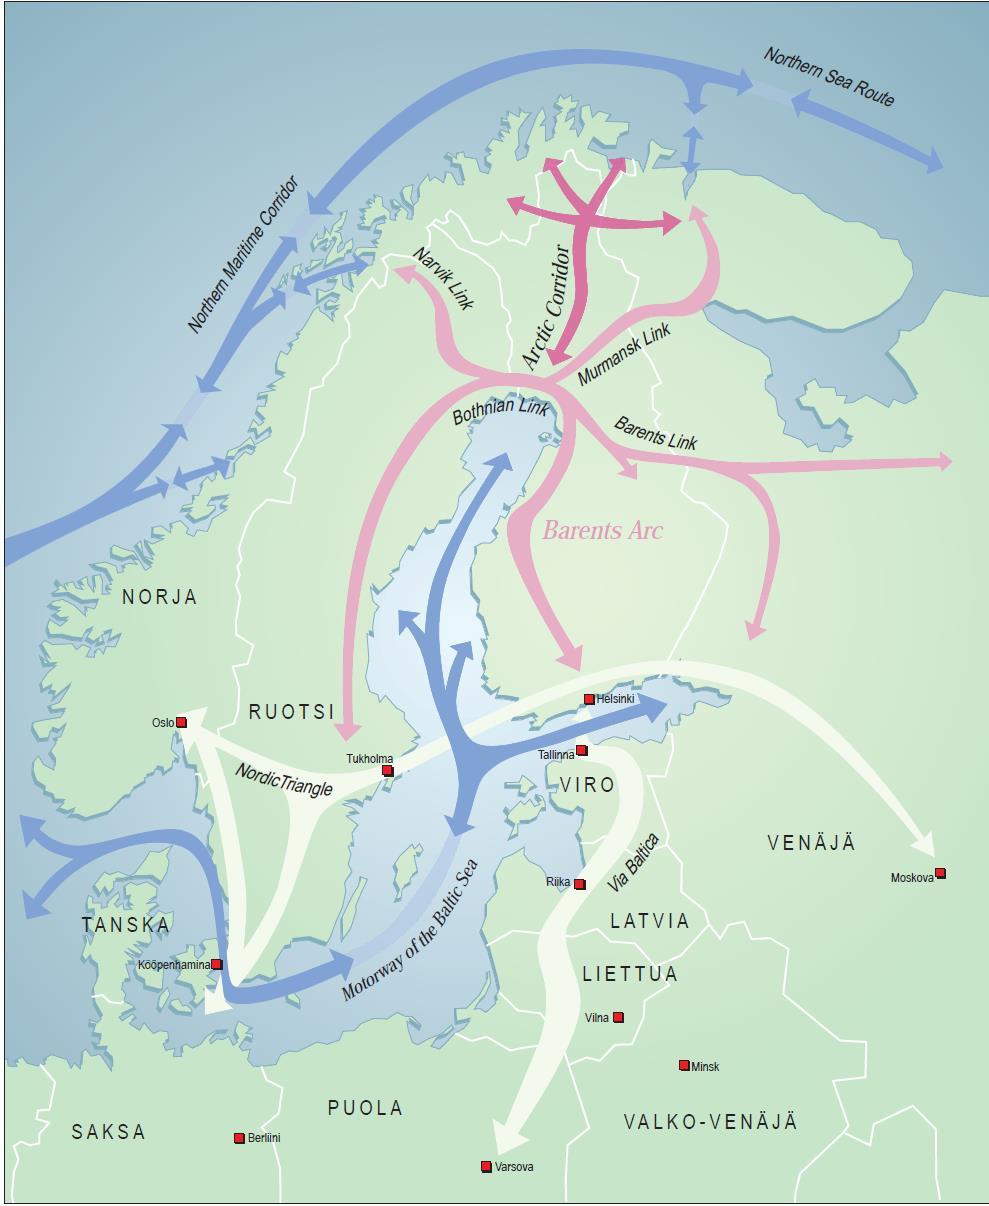 JÄÄMEREN KÄYTÄVÄ - ARCTIC CORRIDOR Kansainvälinen liikenne- ja kehityskäytävä, joka yhdistää Itämeren alueen Jäämeren syväsatamiin, öljy- ja kaasuhankkeisiin sekä